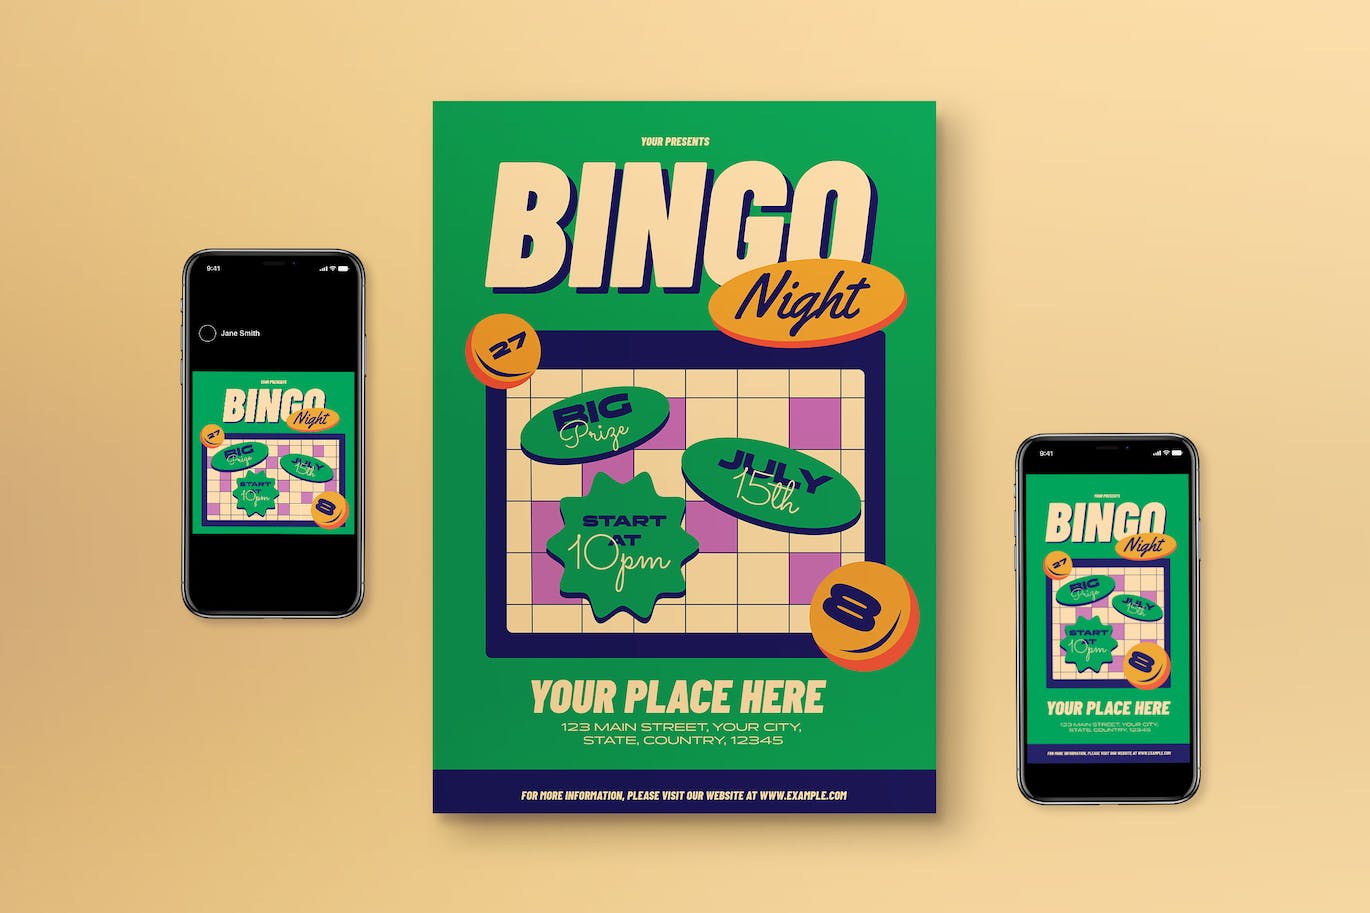 绿色平面设计宾果之夜海报模板下载 Green Flat Design Bingo Night Flyer Set 设计素材 第1张